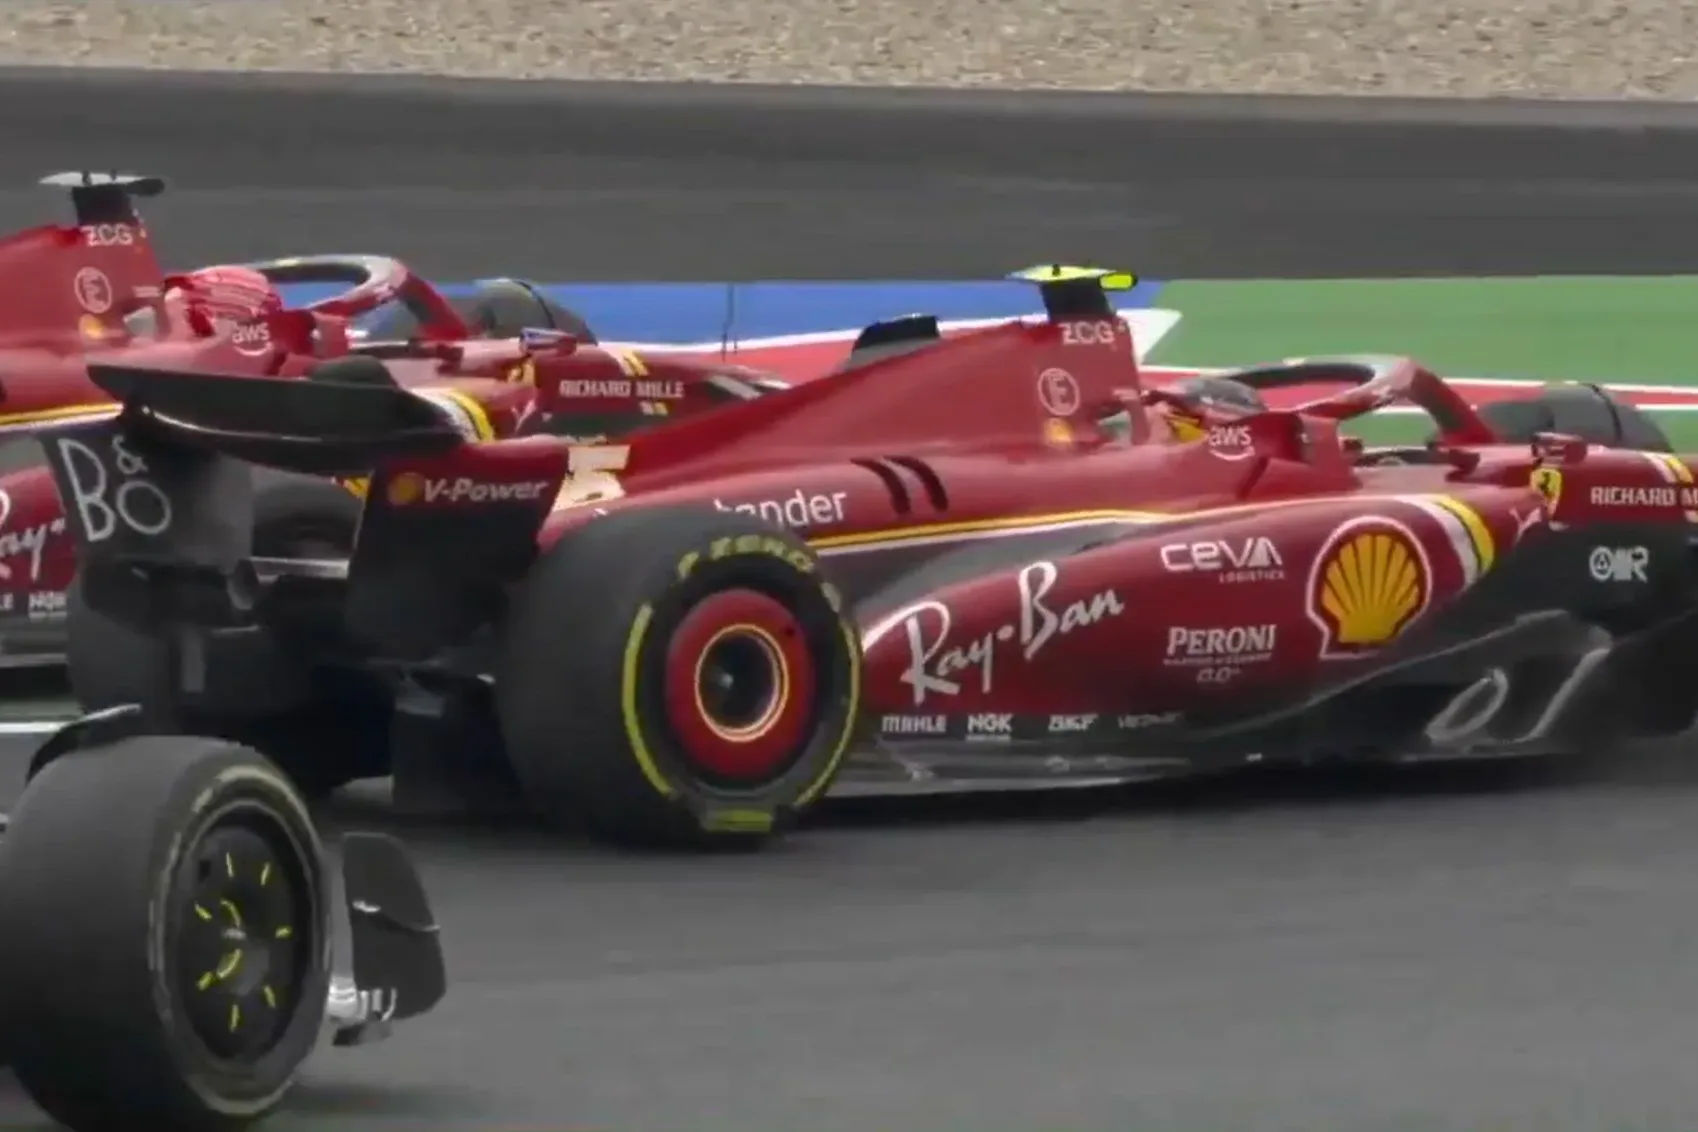 Leclerc aggódik Sainz viselkedése miatt, szerintem átlépte a határt